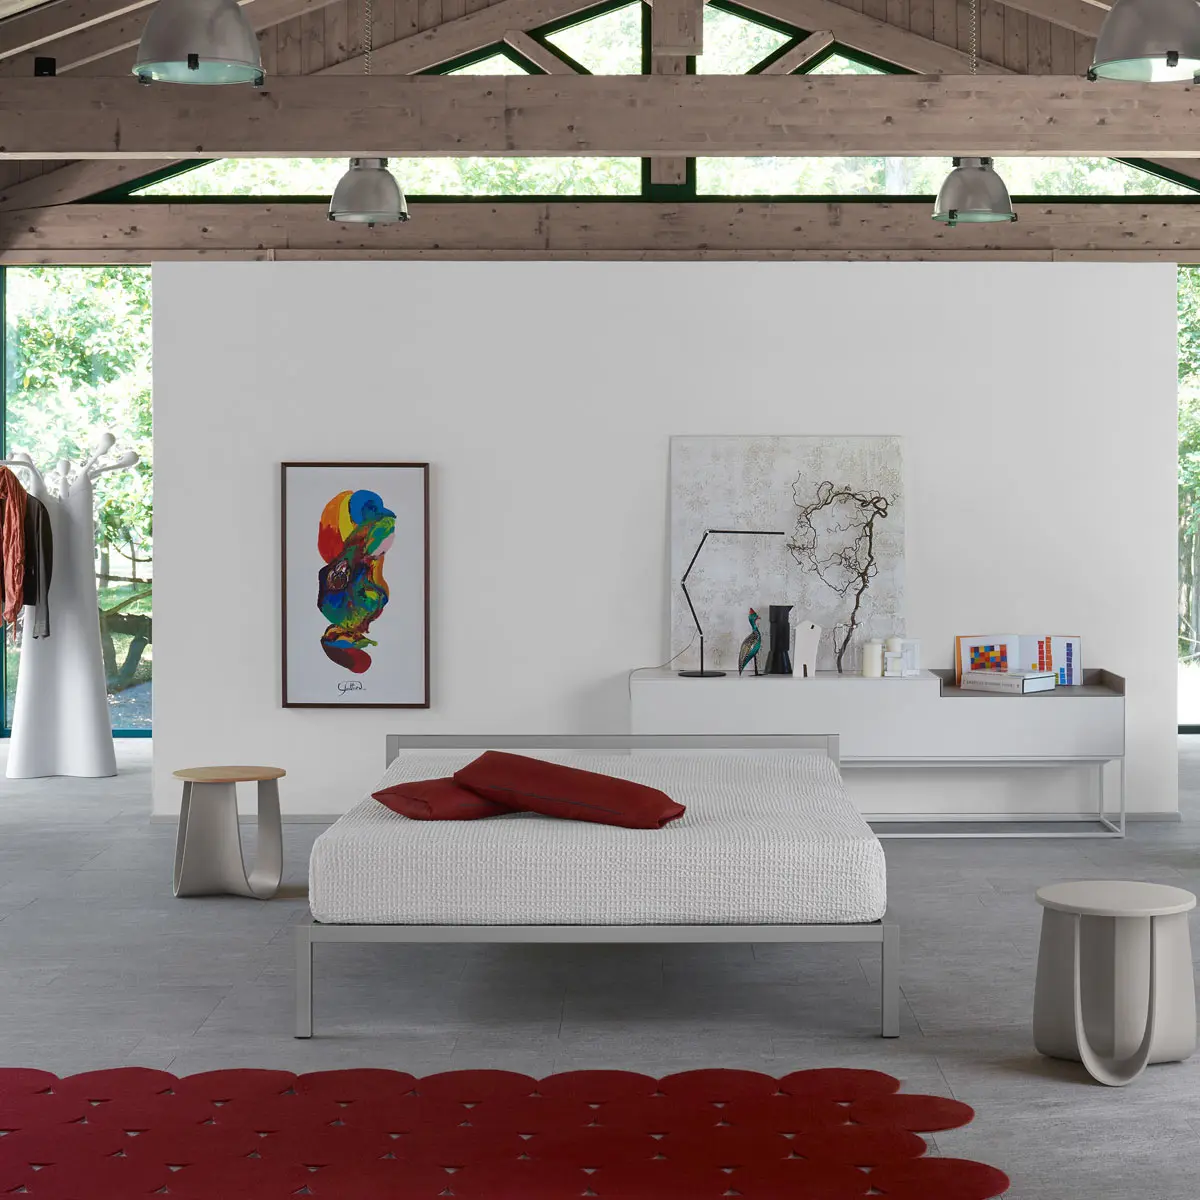 Aluminium Bed Italy ☞ Structure: Matt Painted Red ☞ Dimensions: 190 x 210 cm